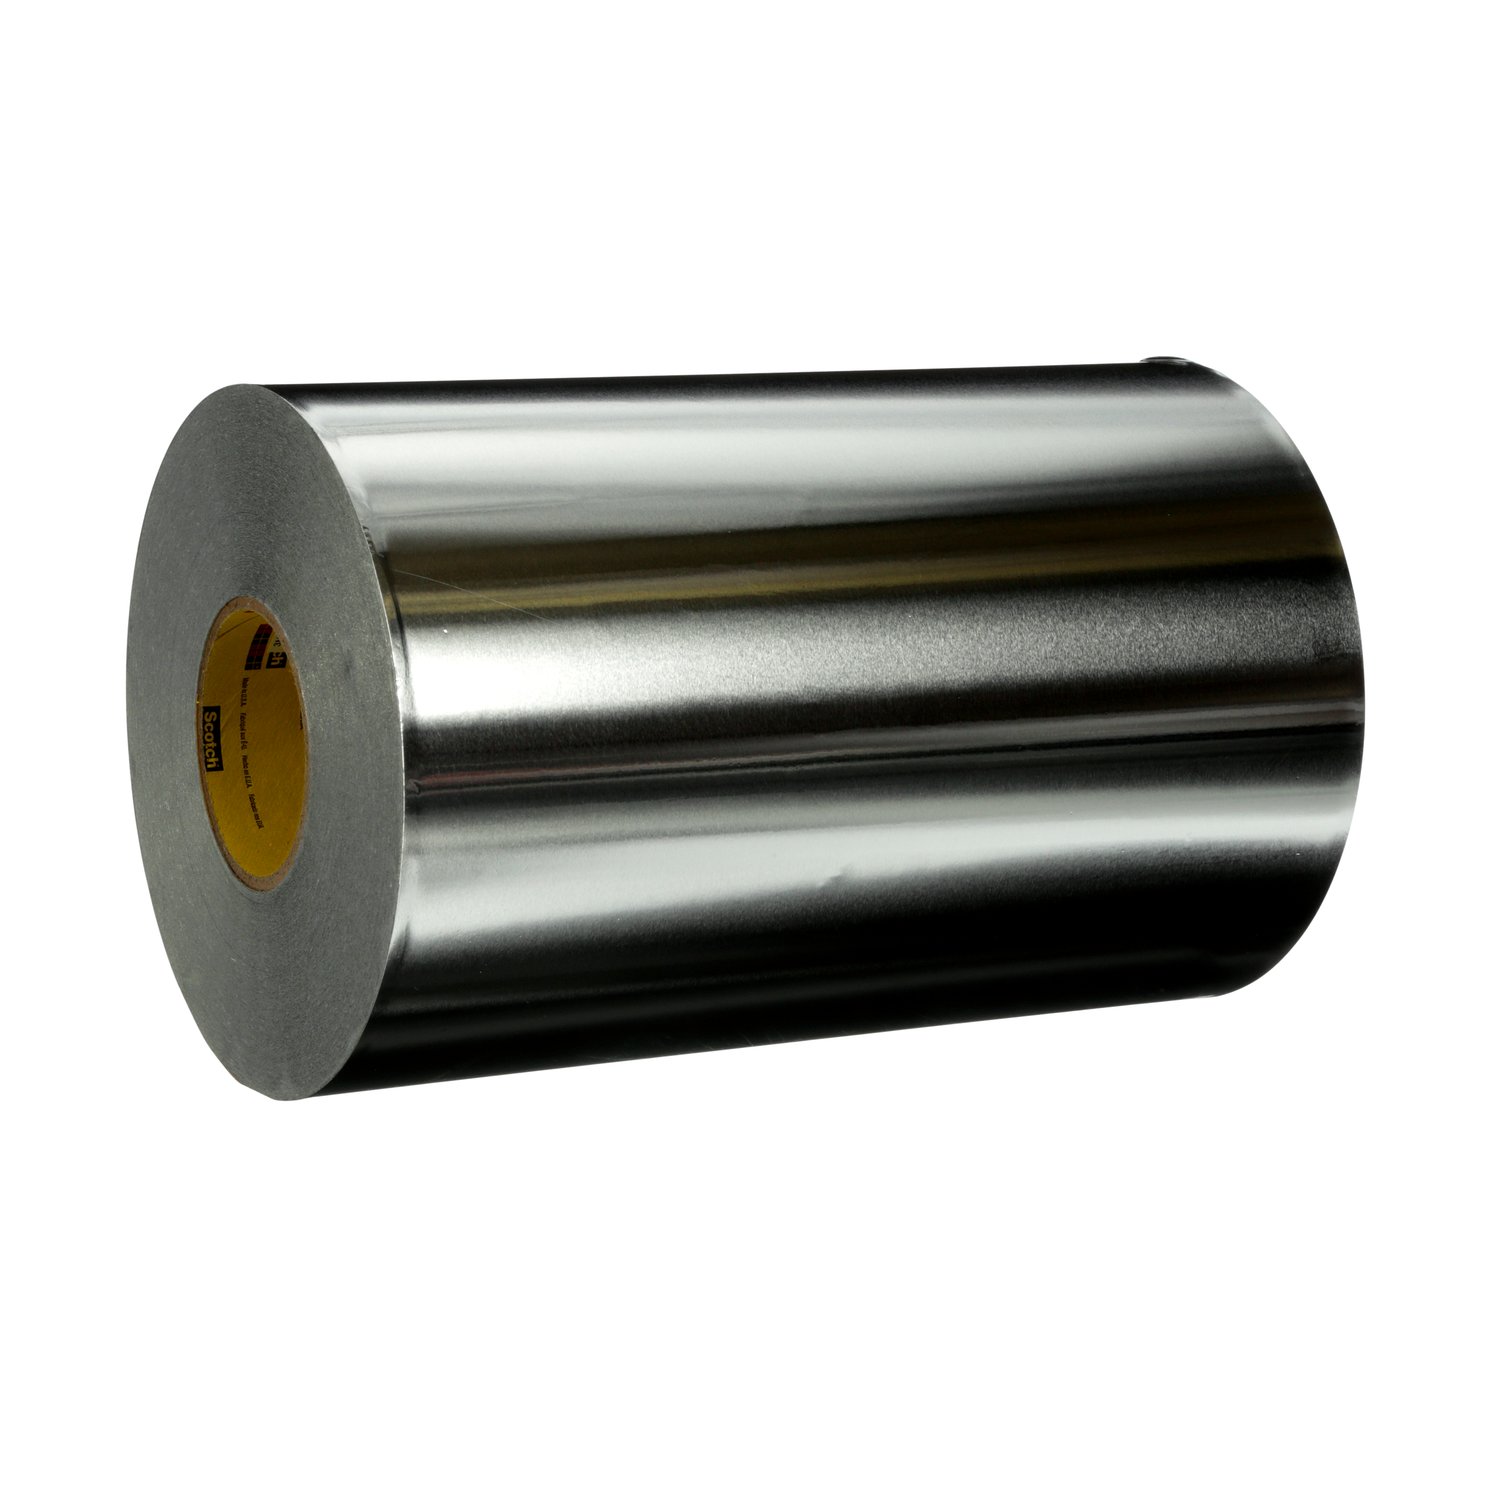 7100102049 - 3M High Temperature Aluminum Foil Tape 433L, Silver, 12 in x 60 yd, 3.5 mil, 1 roll per case